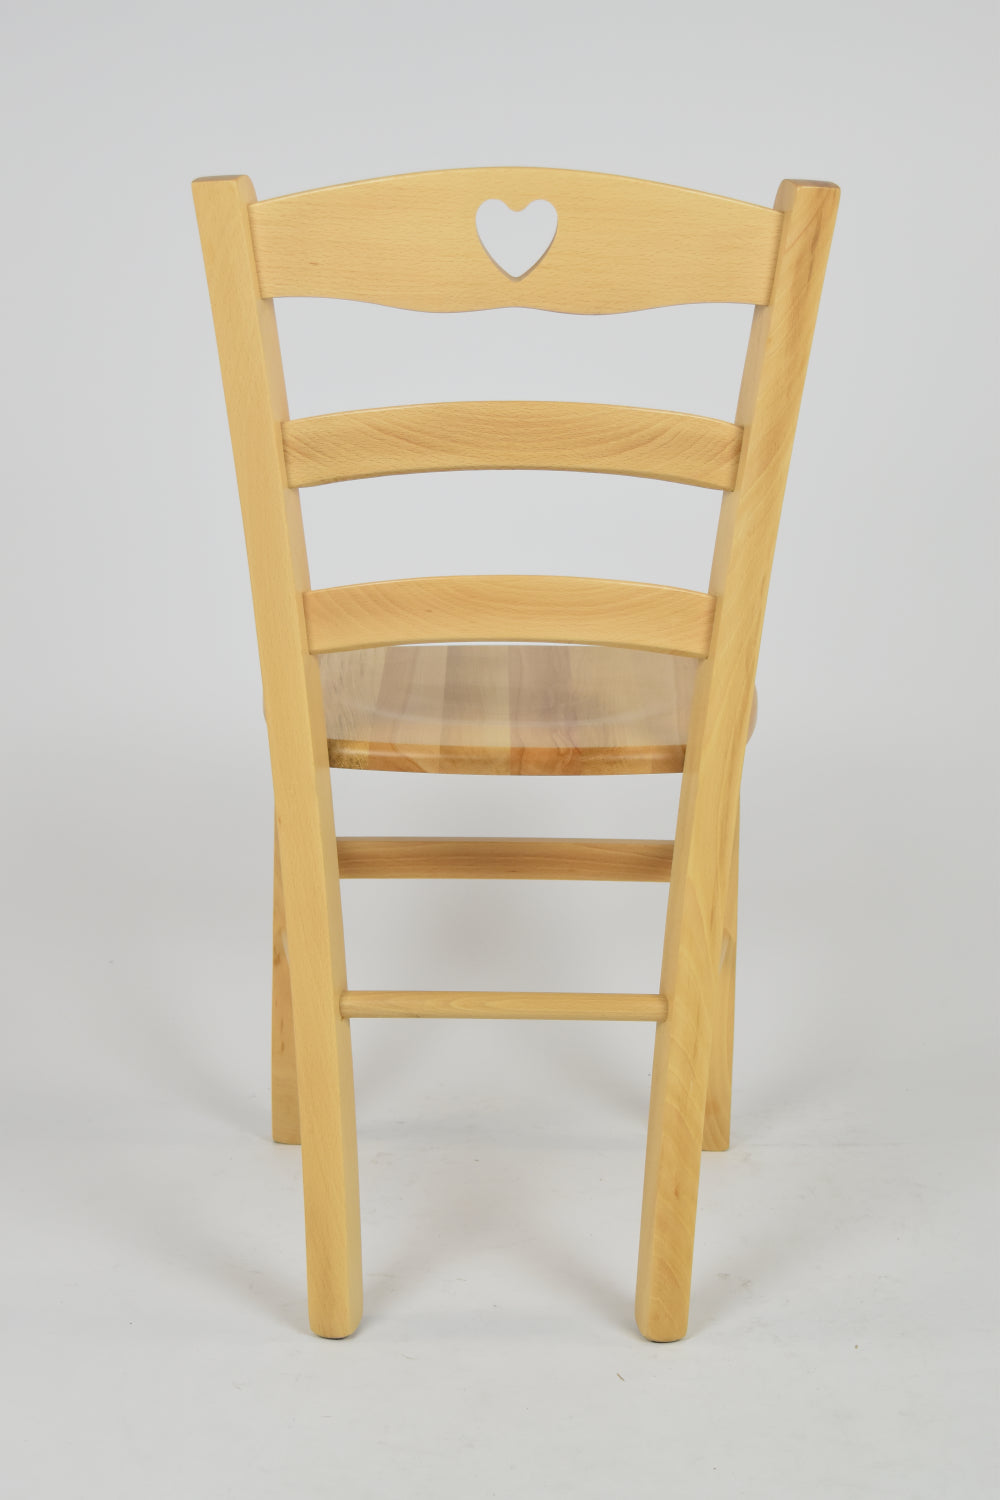 Tommychairs - Set 2 sillas de Cocina y Comedor Cuore, Estructura en Madera de Haya Color Natural y Asiento en Madera